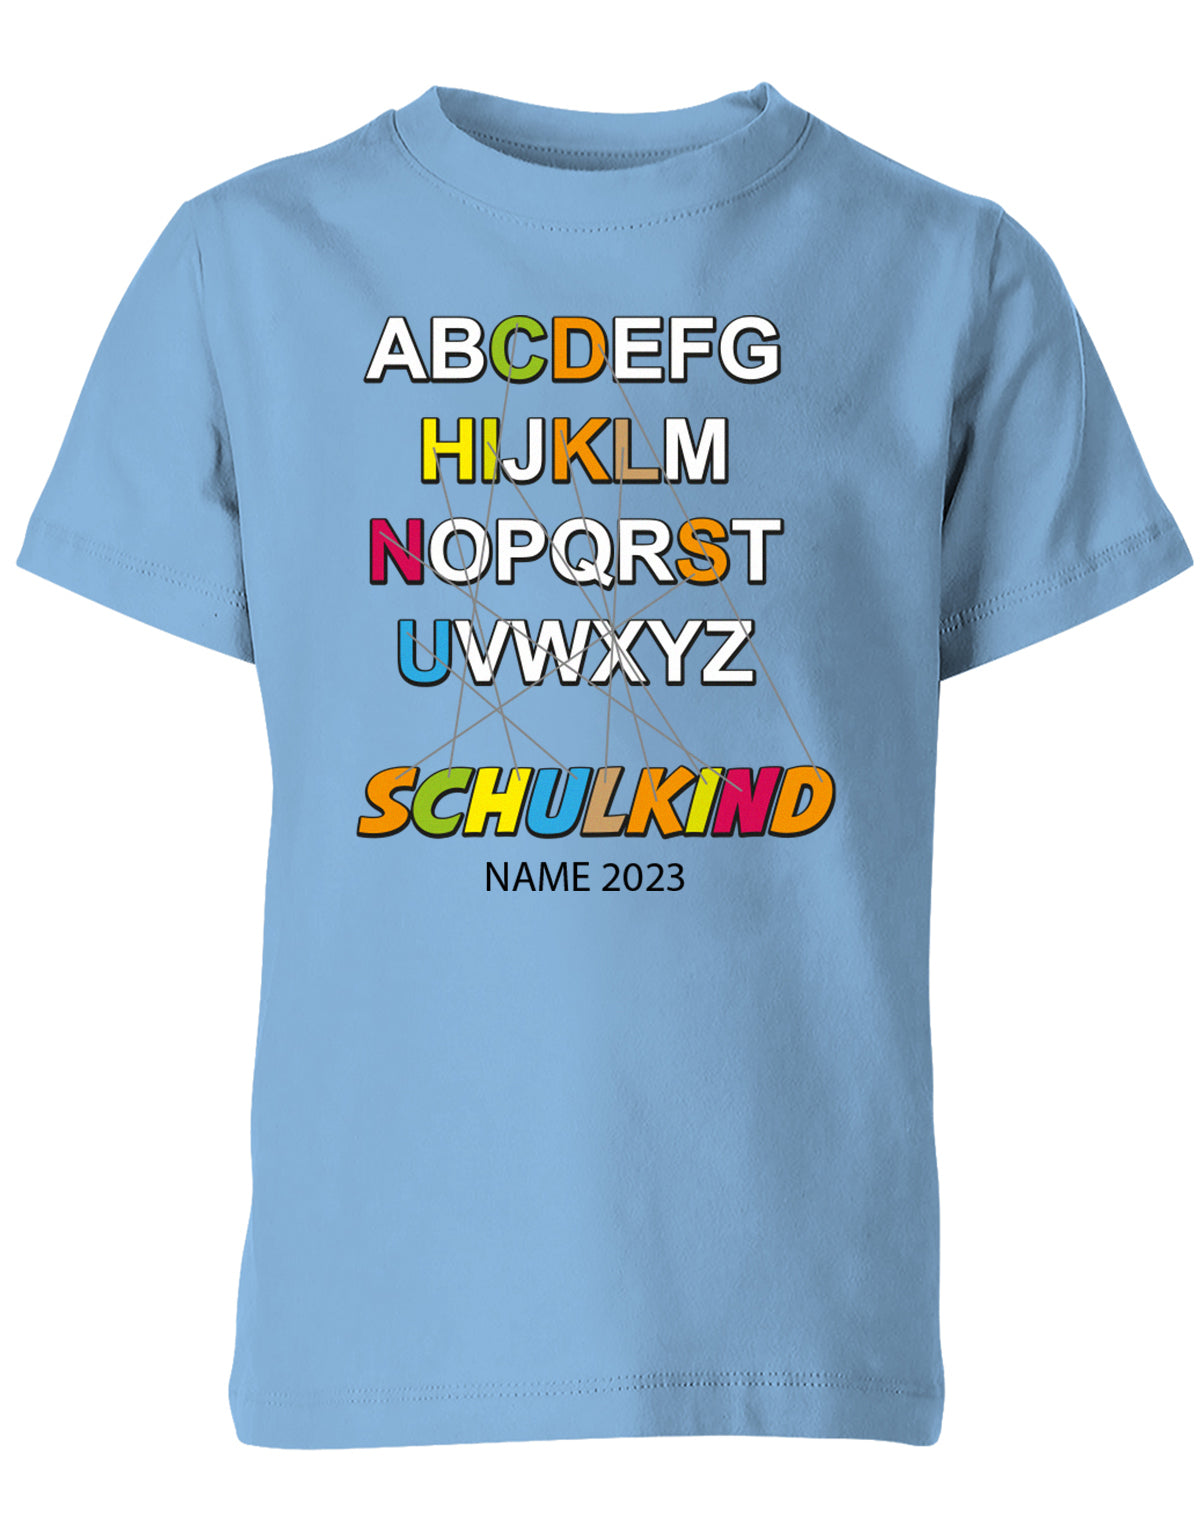 Schulkind Alphabet ABC mit Name - Einschulung T-Shirt hellblau